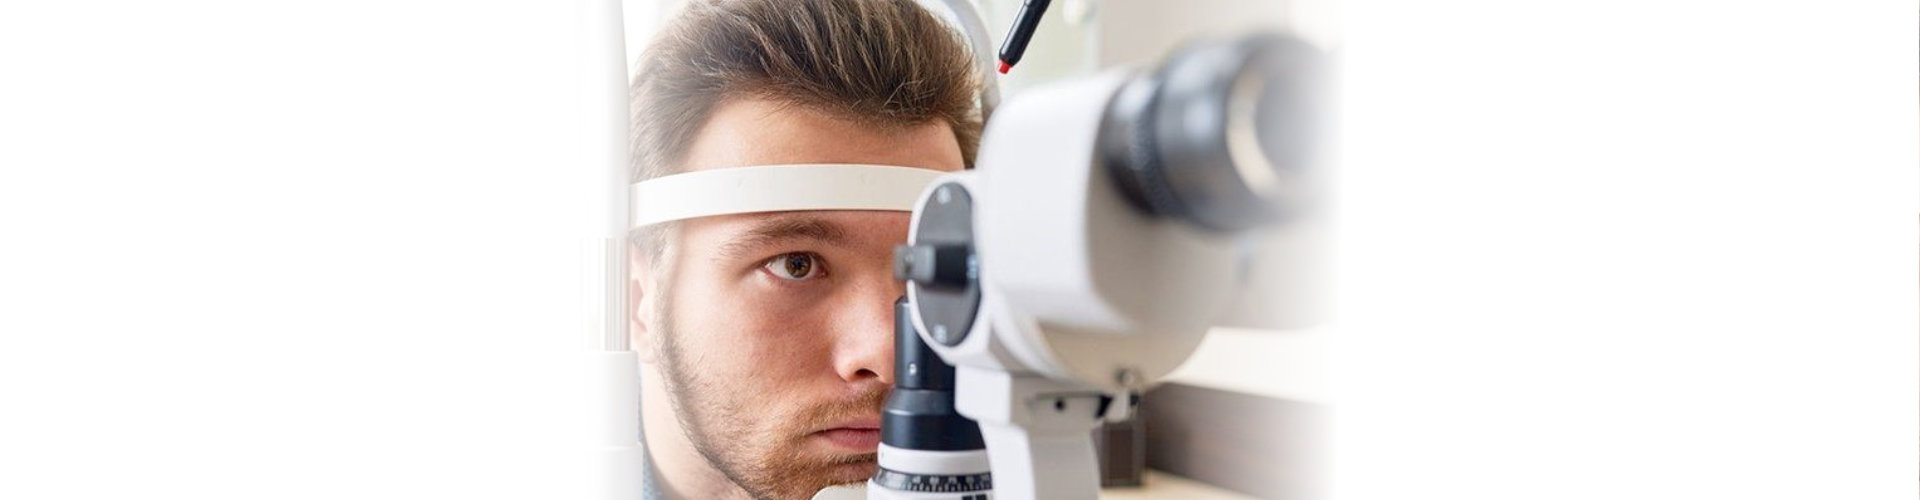 man taking an eyesight test